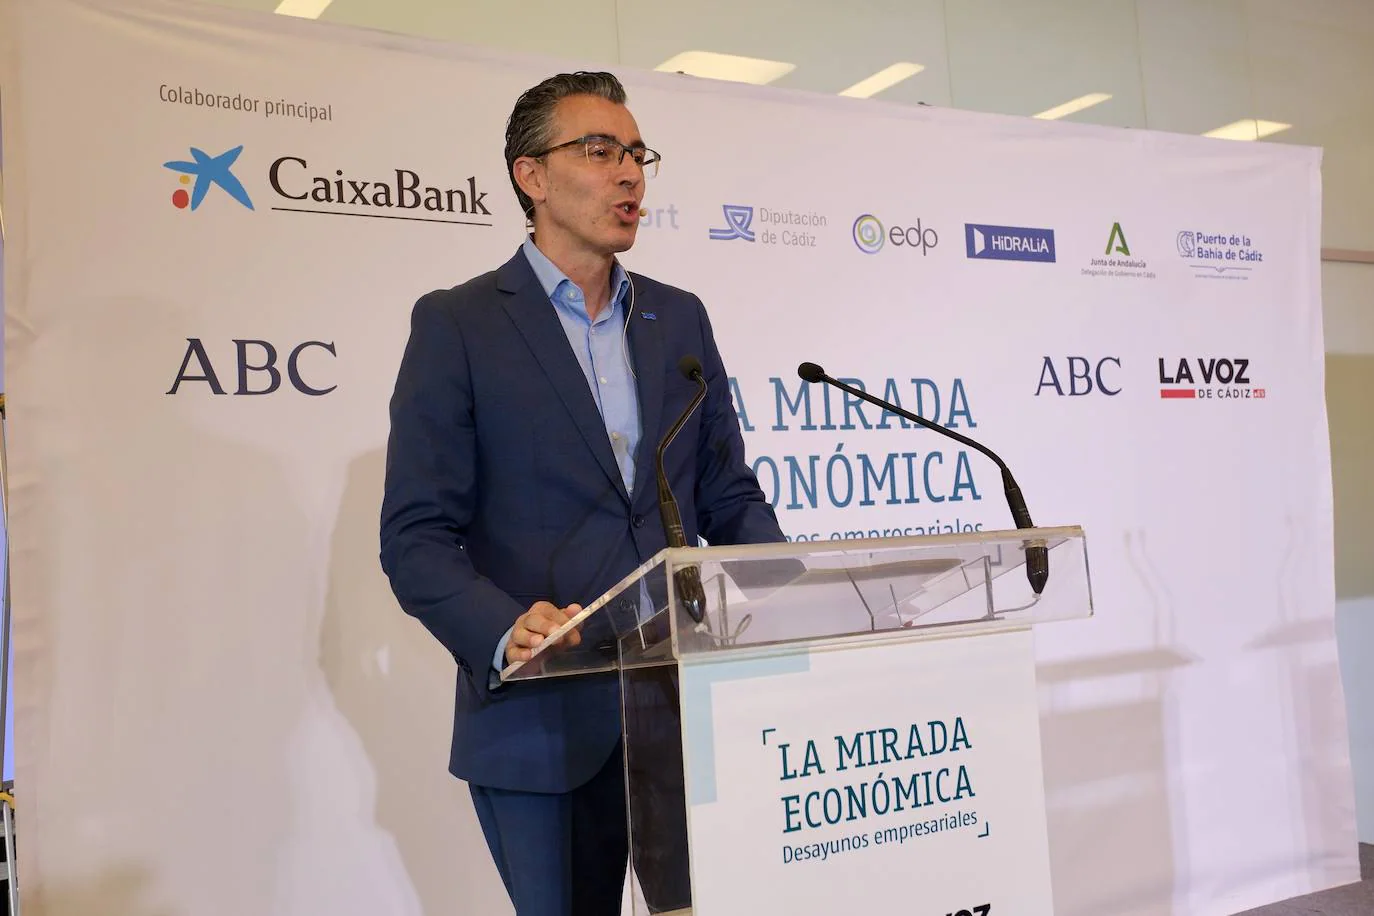 Fotos: La Mirada Económica con Joaquín Segovia, director territorial Sur de Telefónica